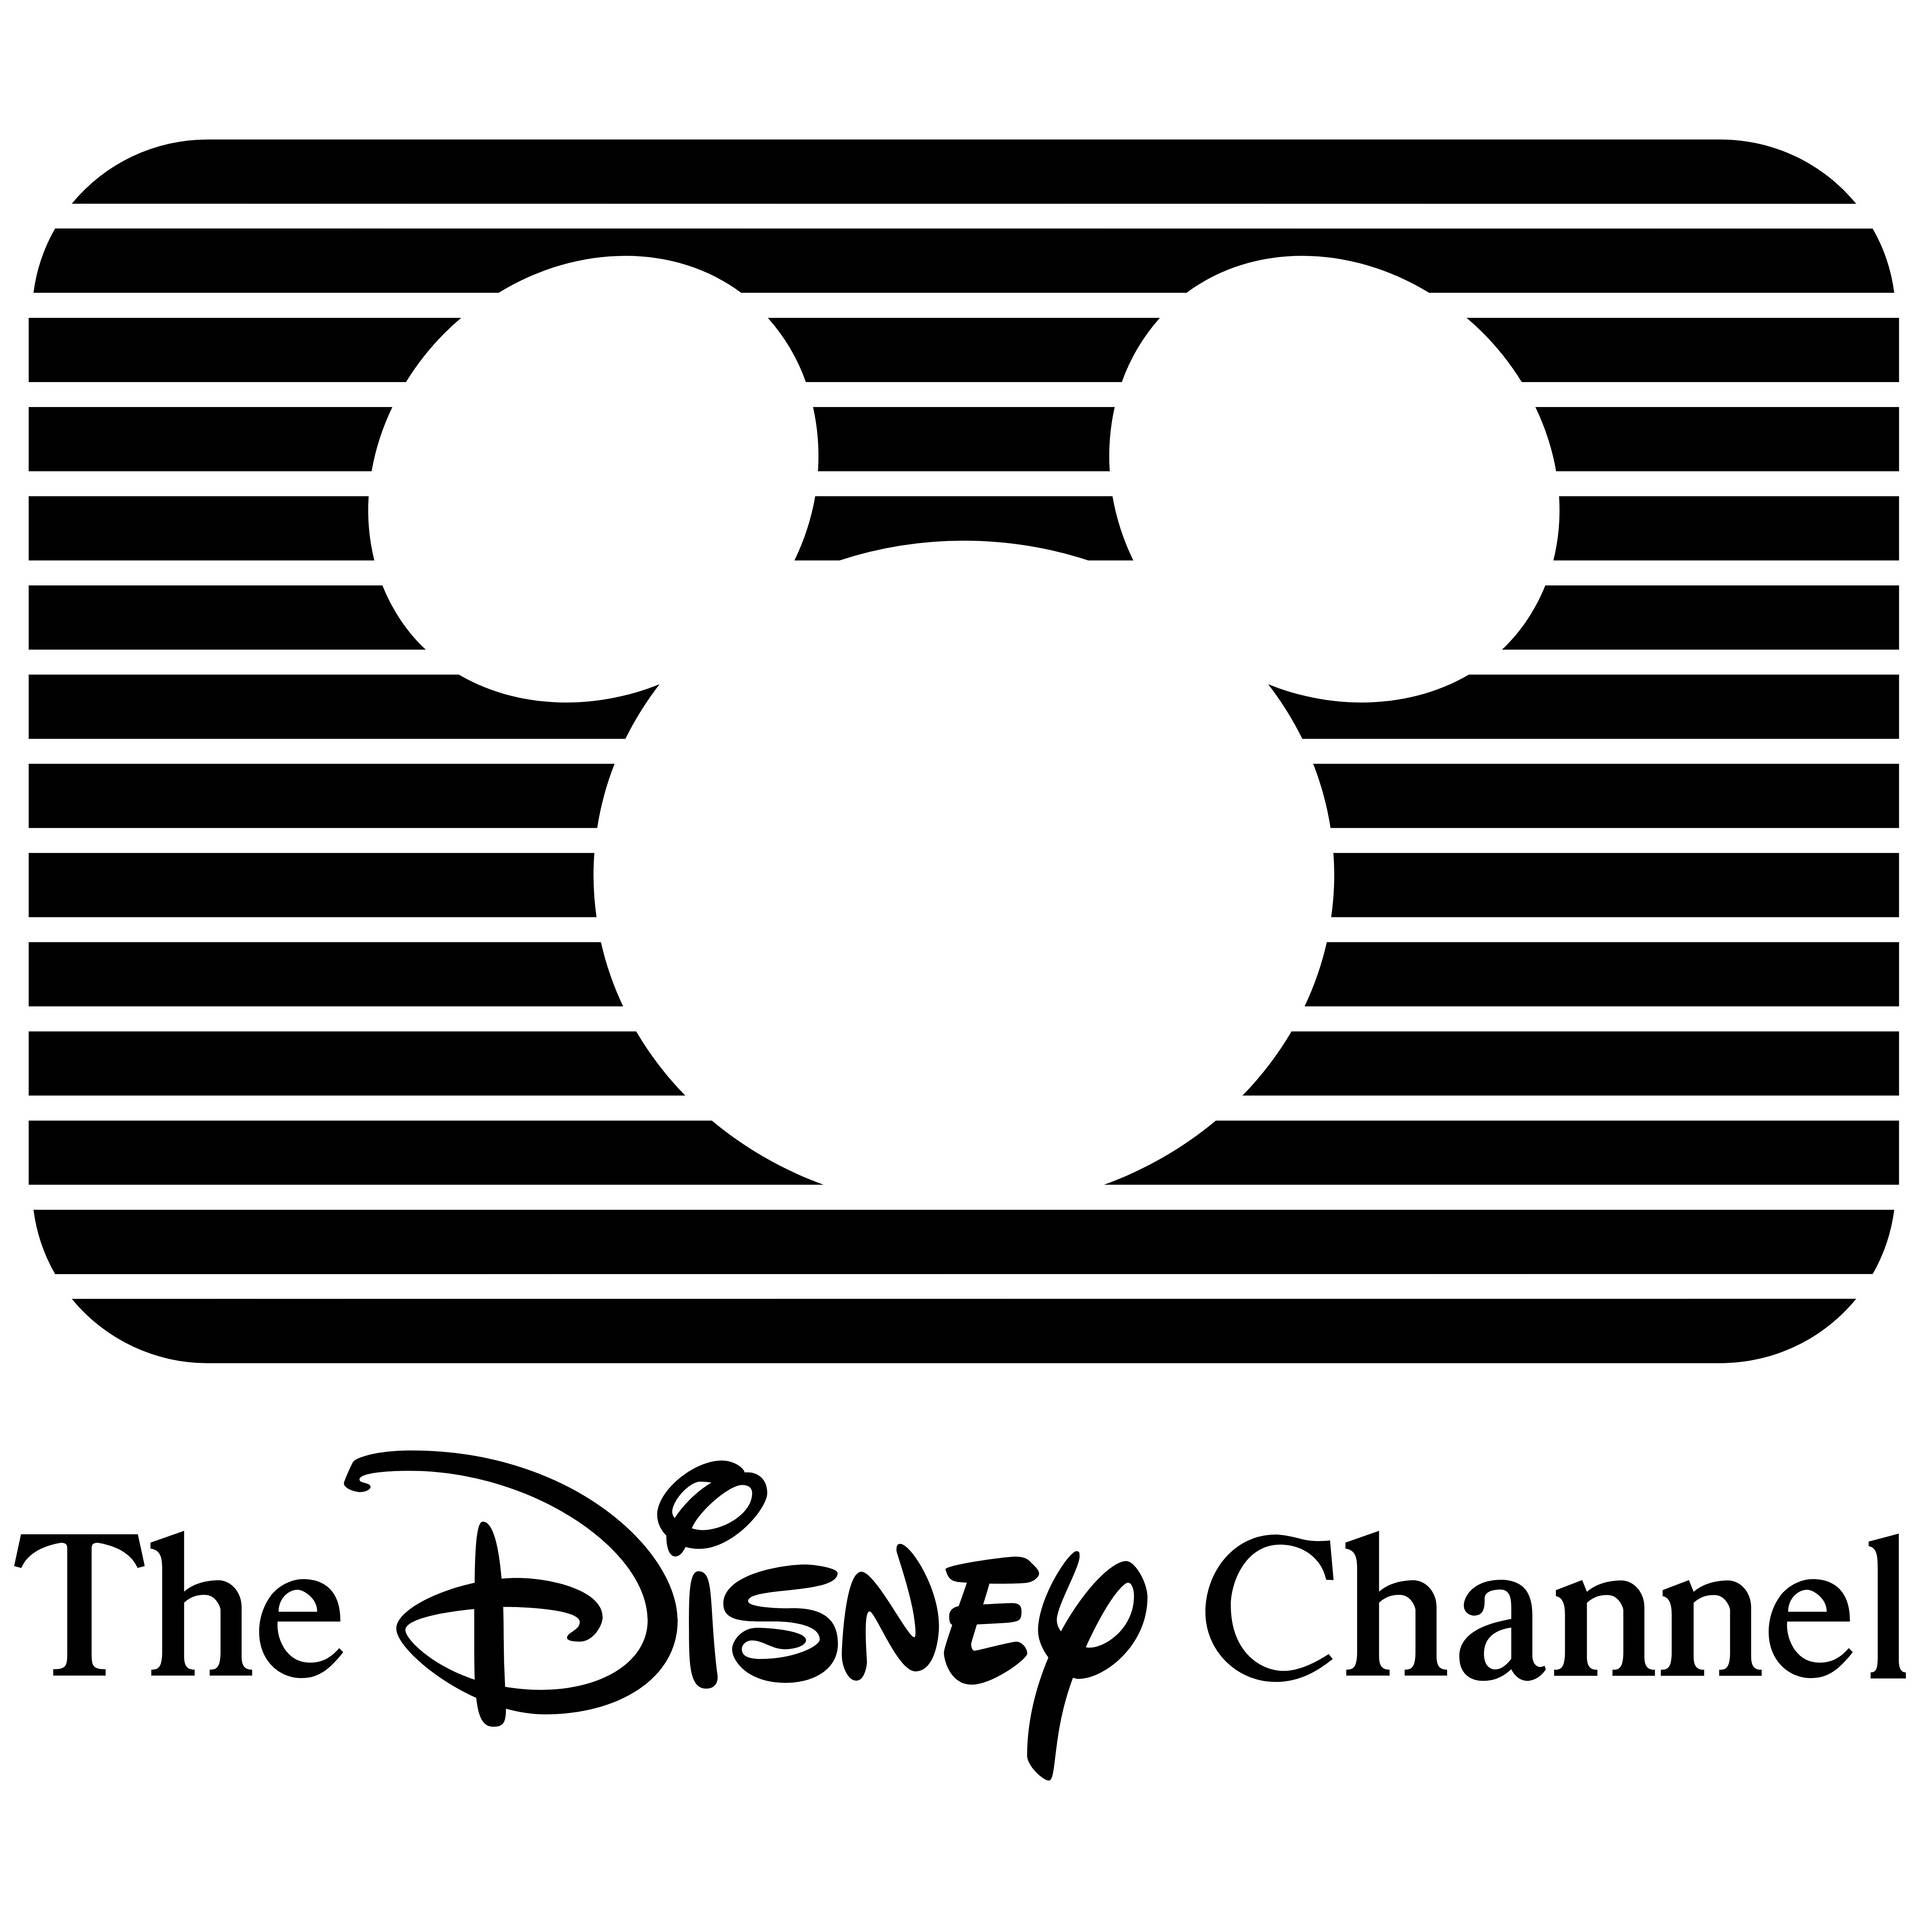 Disney Channel Vintage Logo Background